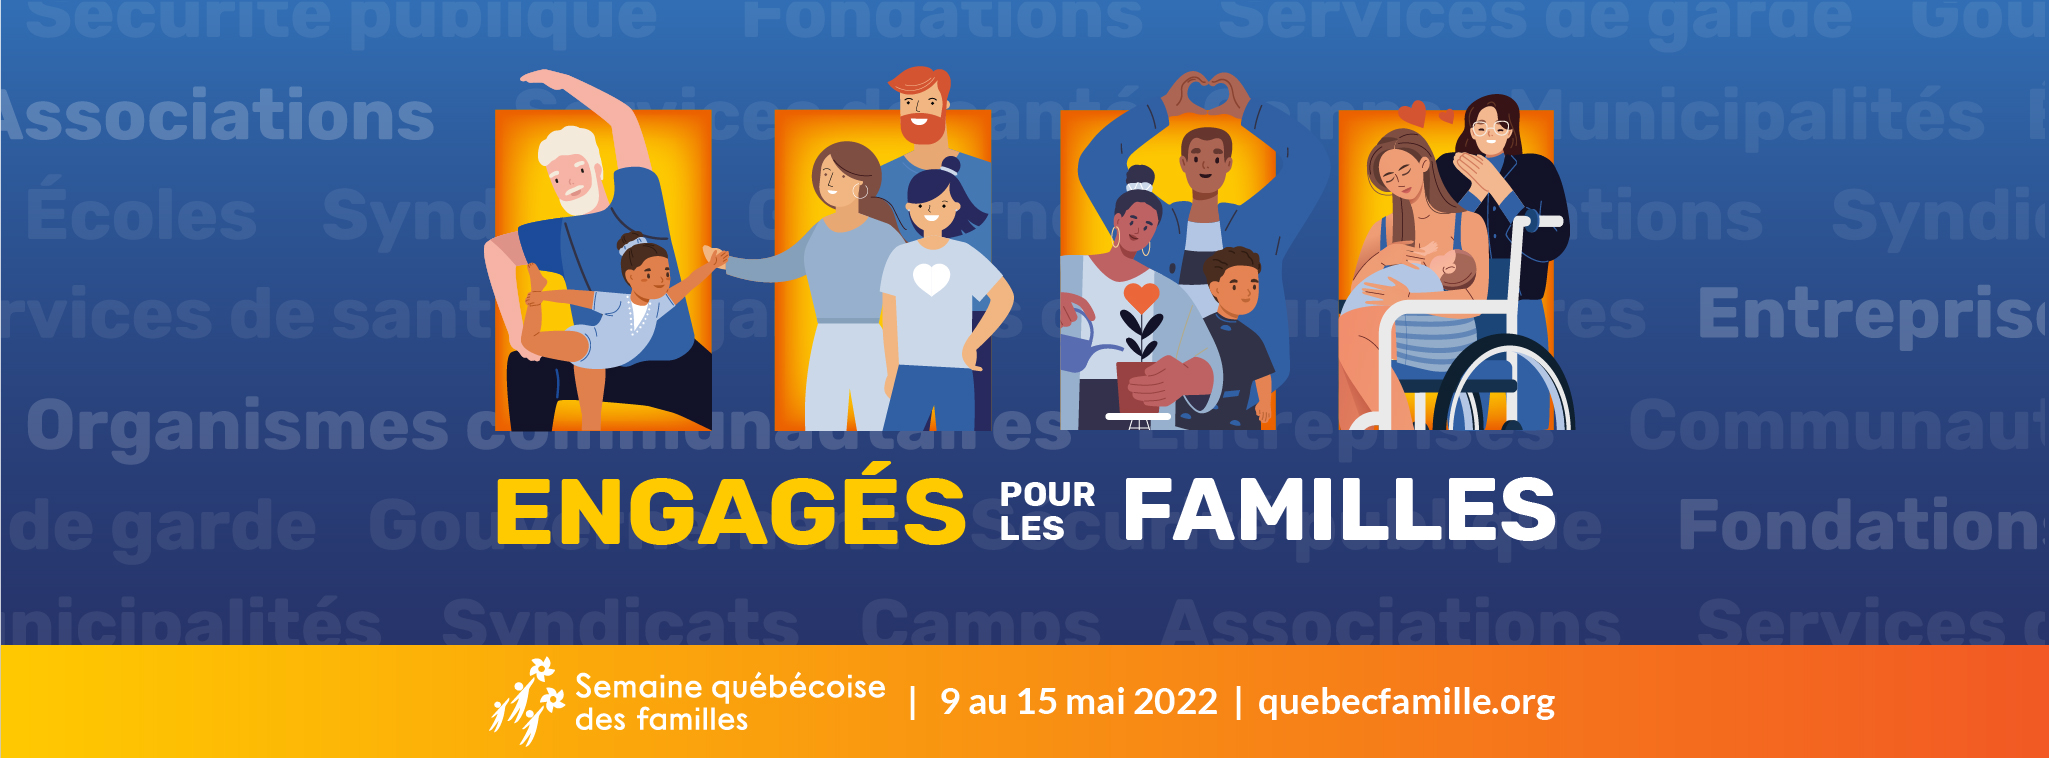 Semaine québécoise des familles 2022